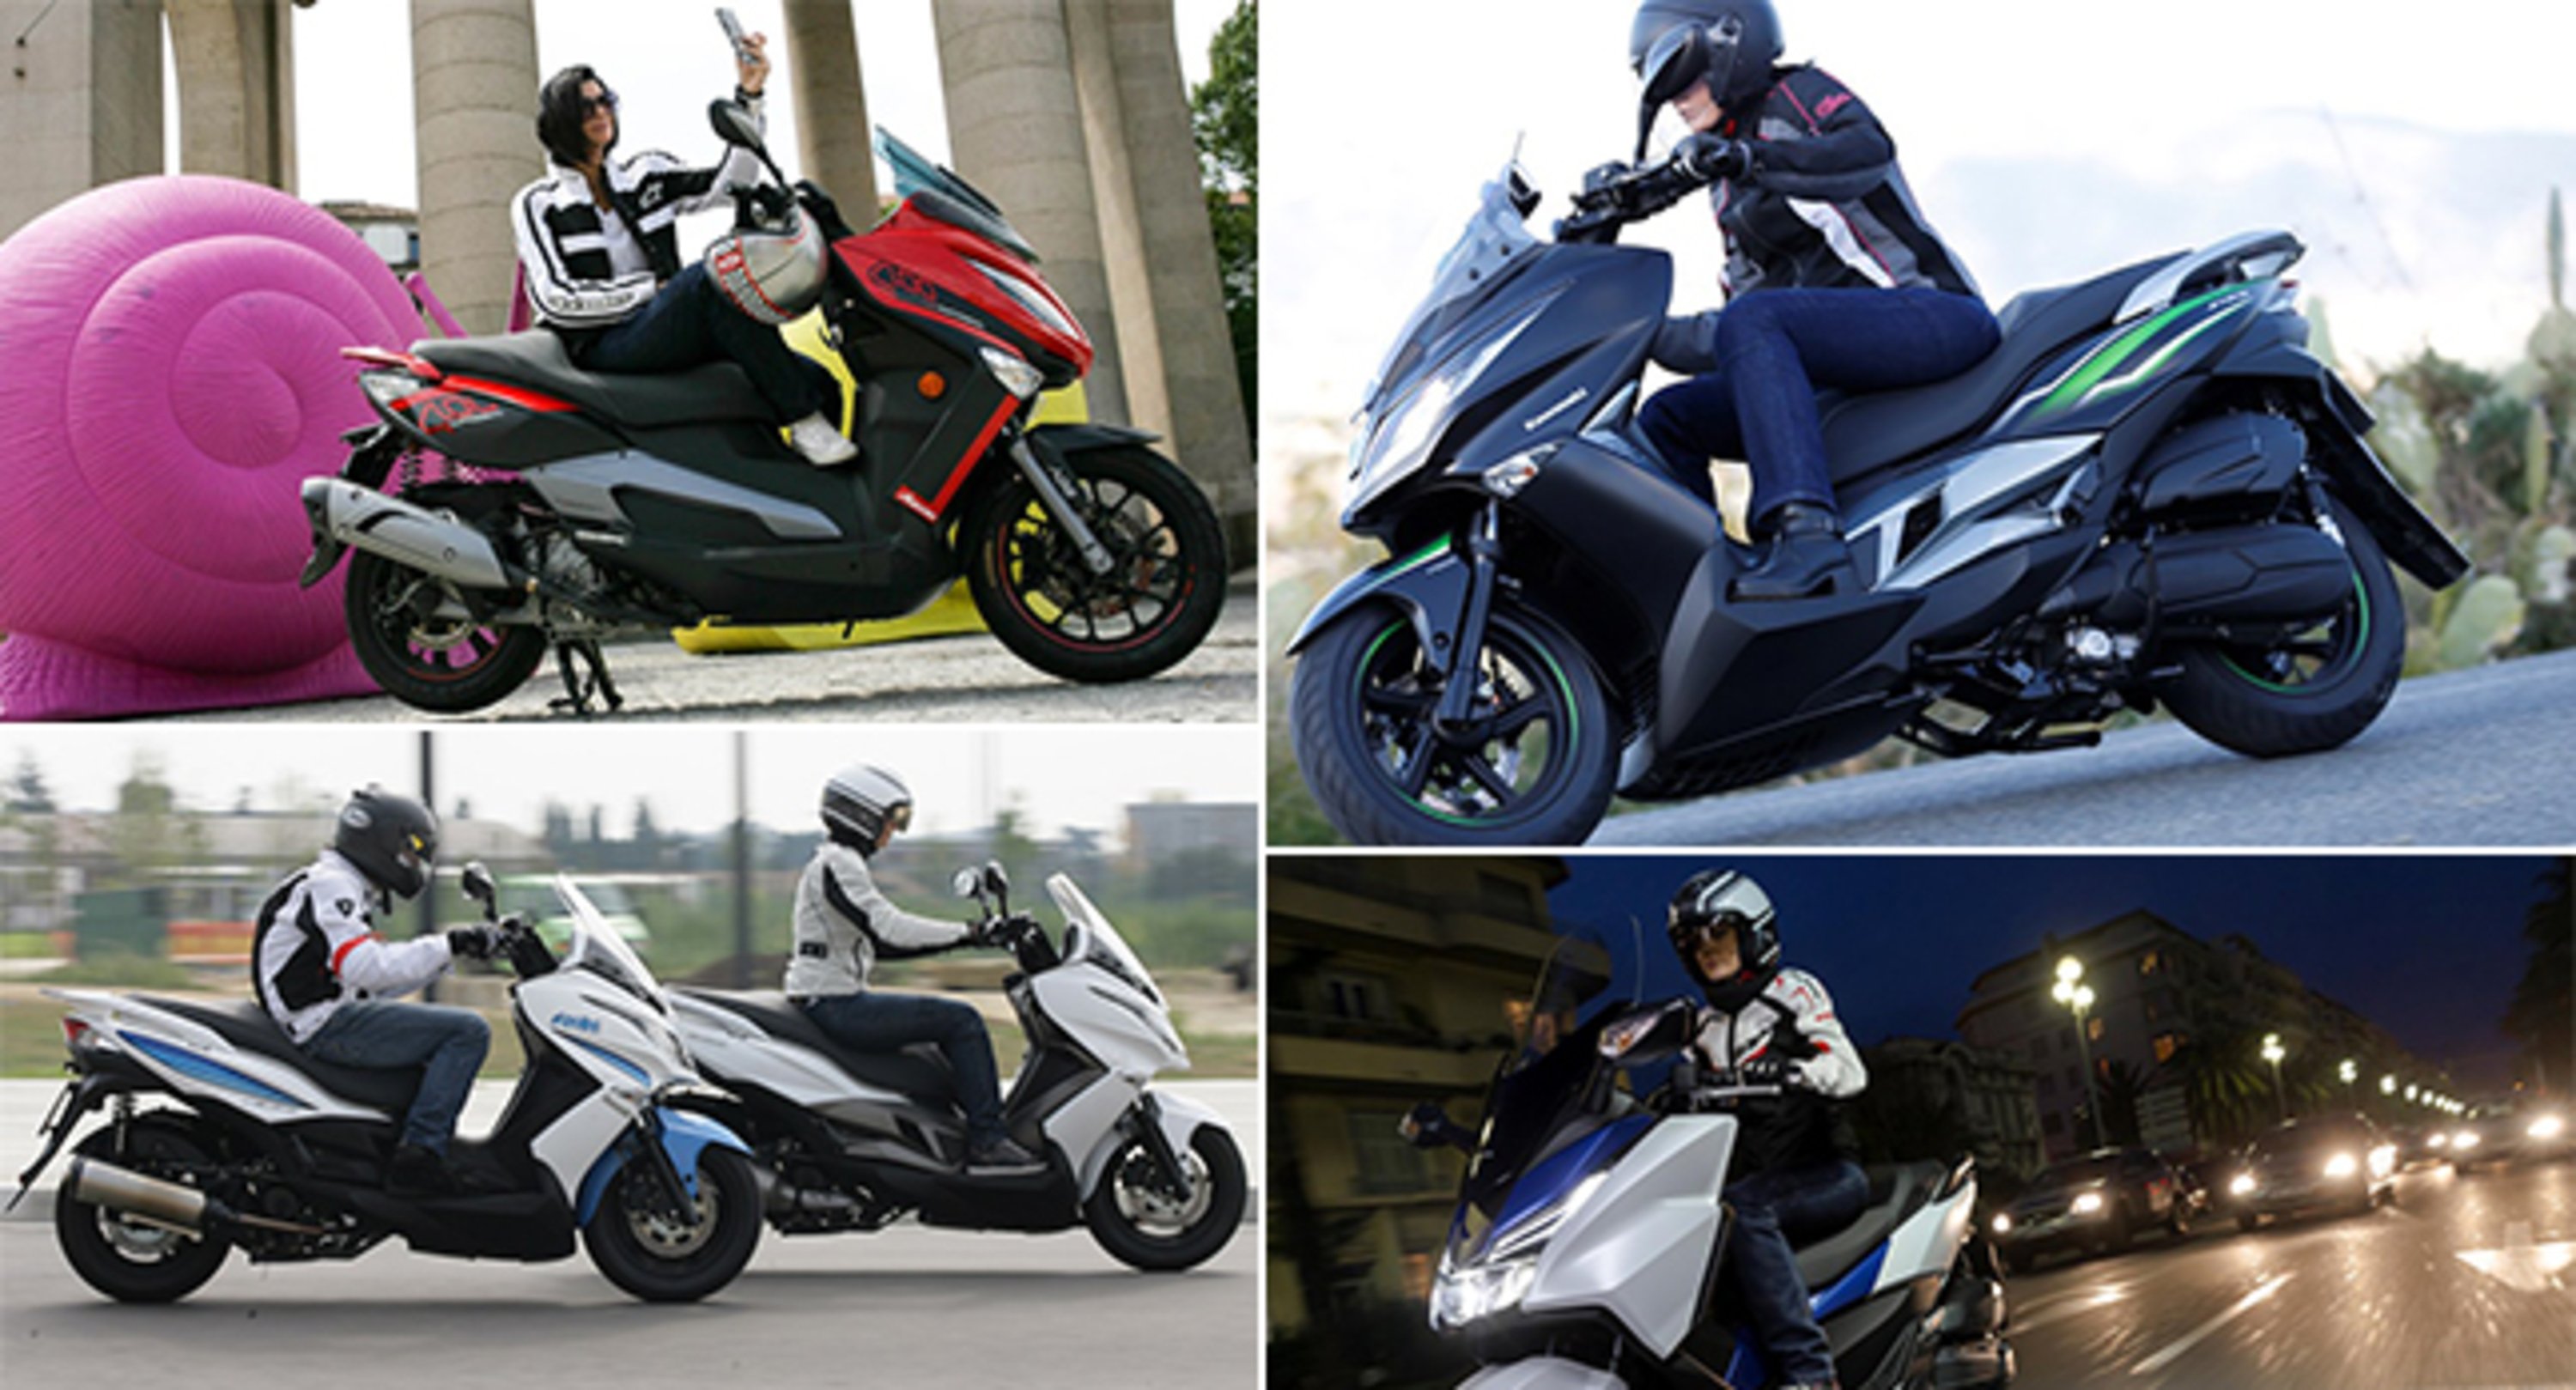 Le prove scooter 2015 di Moto.it